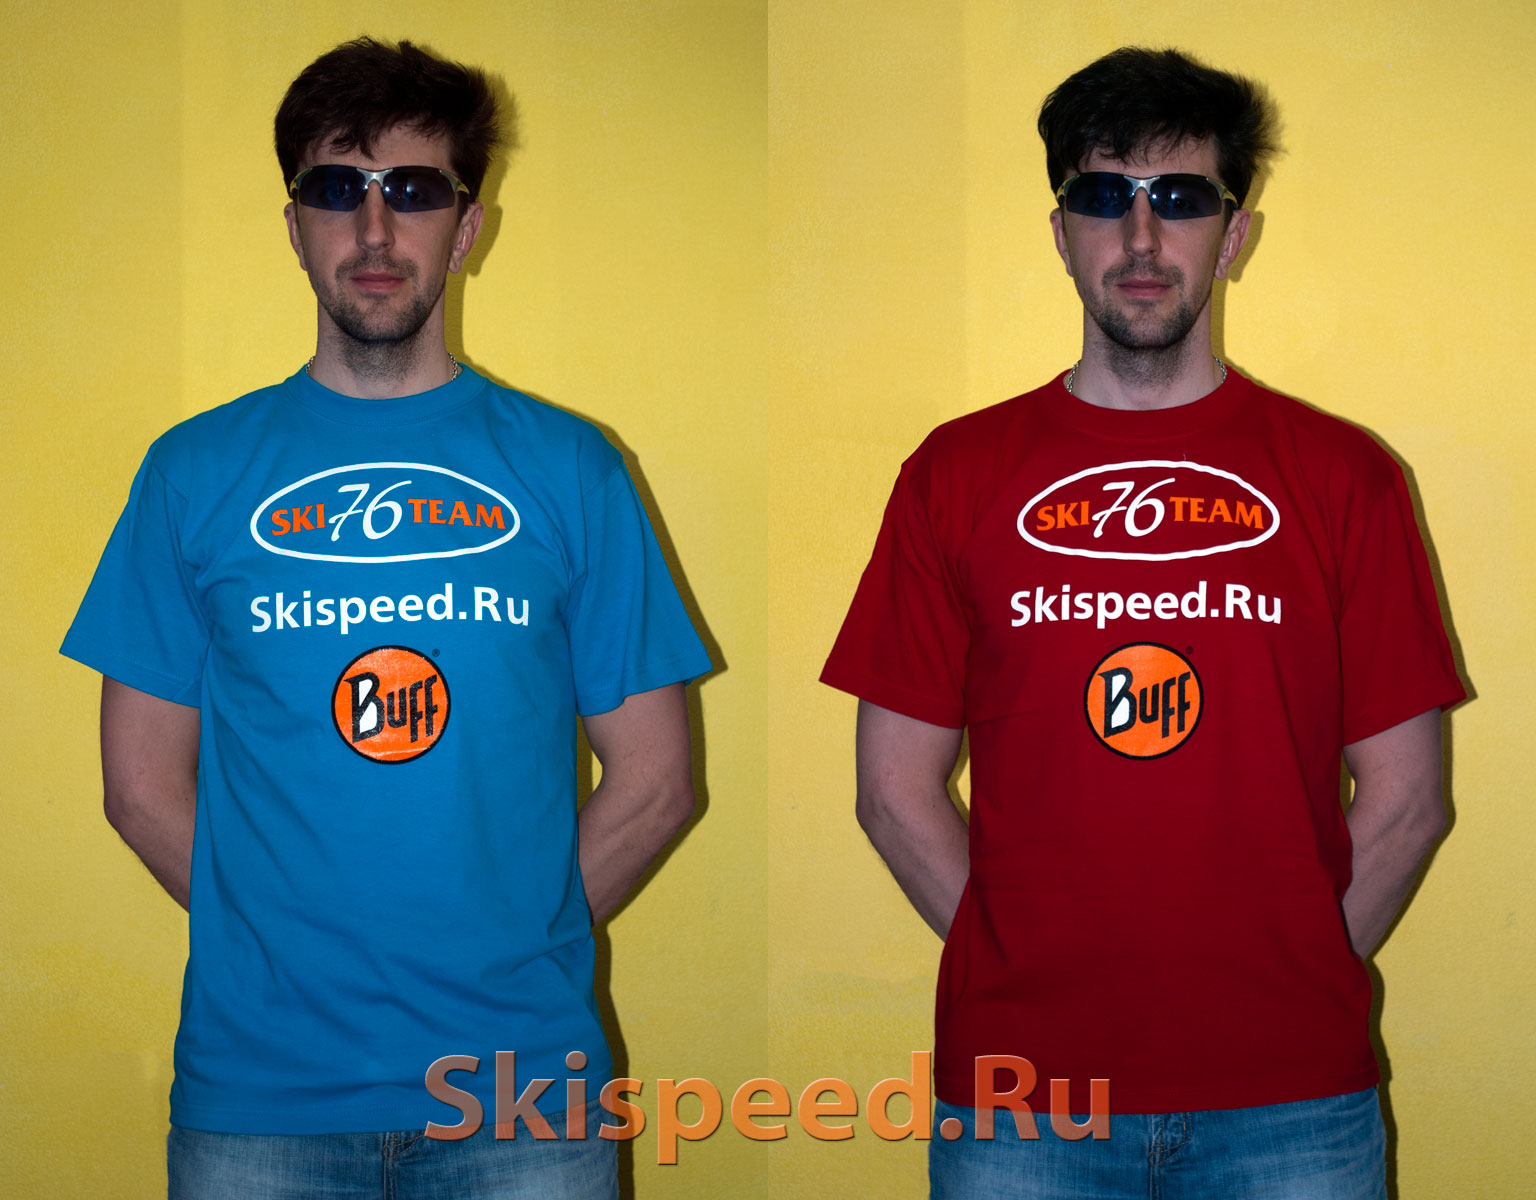 Опубликовано в Экипировка / инвентарь - Помечено клубная футболка Ski 76